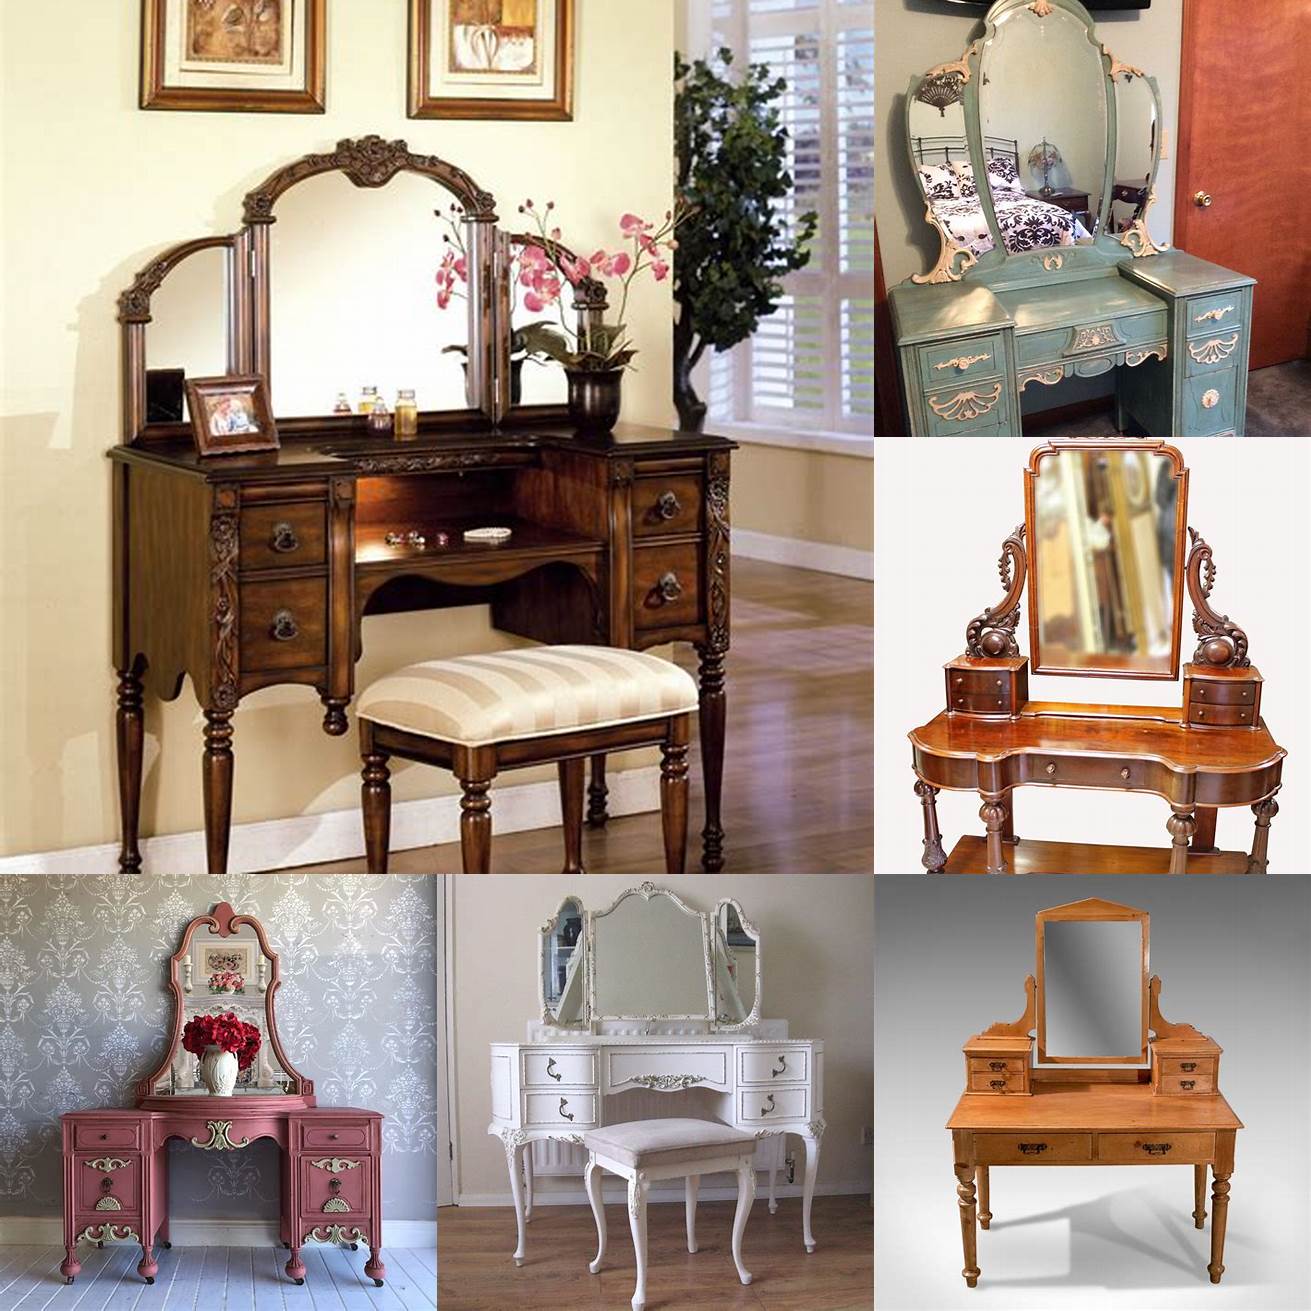 Antique Vanity Table